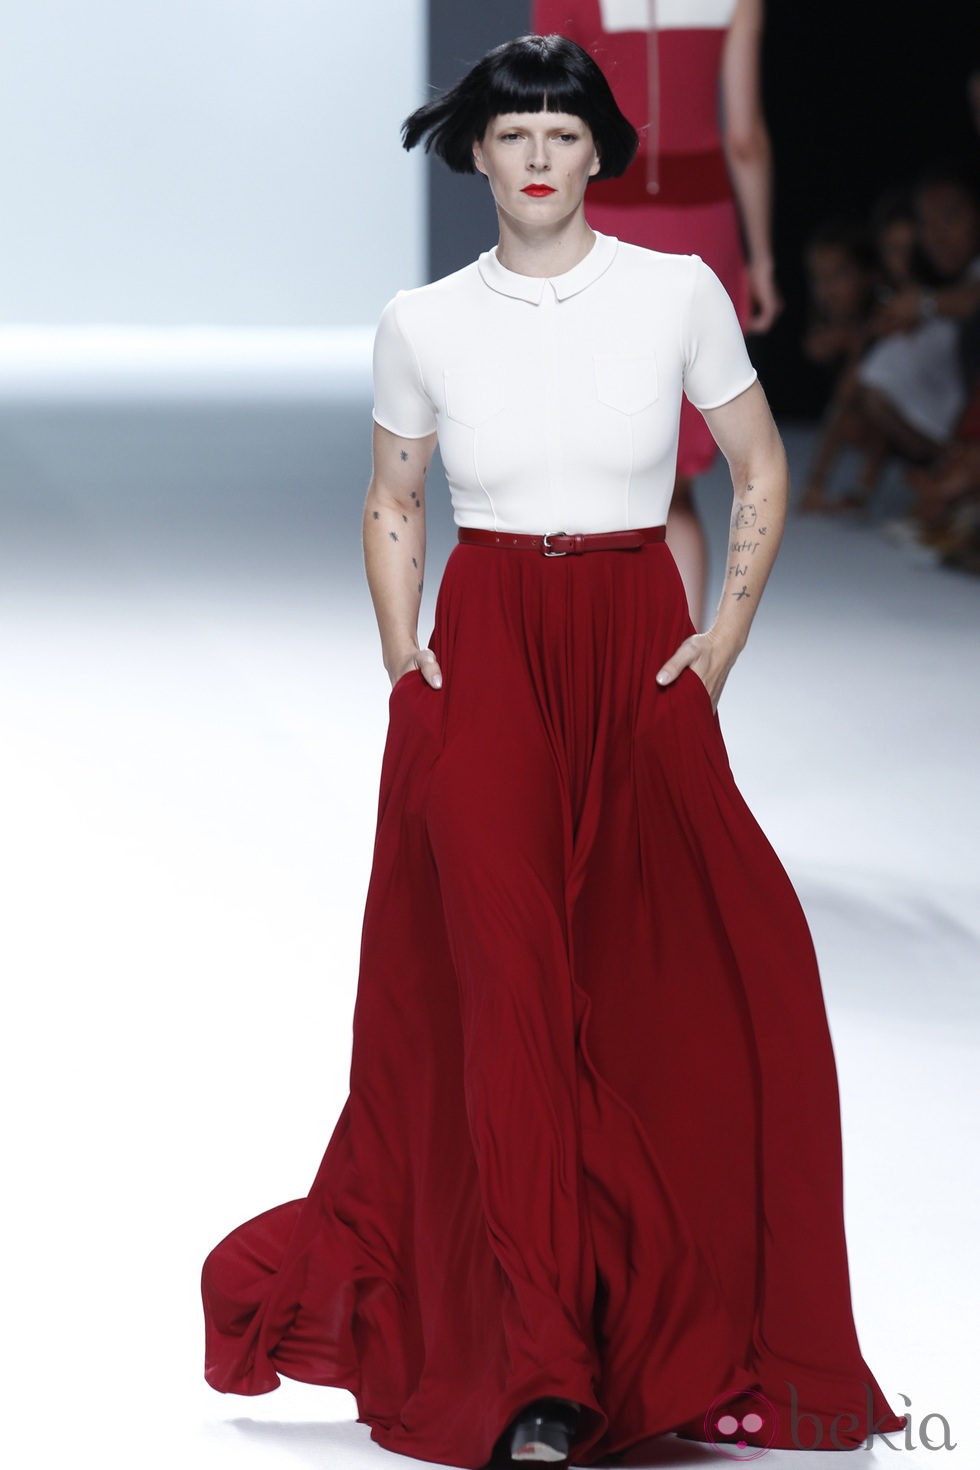 Bimba Bosé con falda larga roja y blusa blanca de la colección primavera/verano de David Delfín